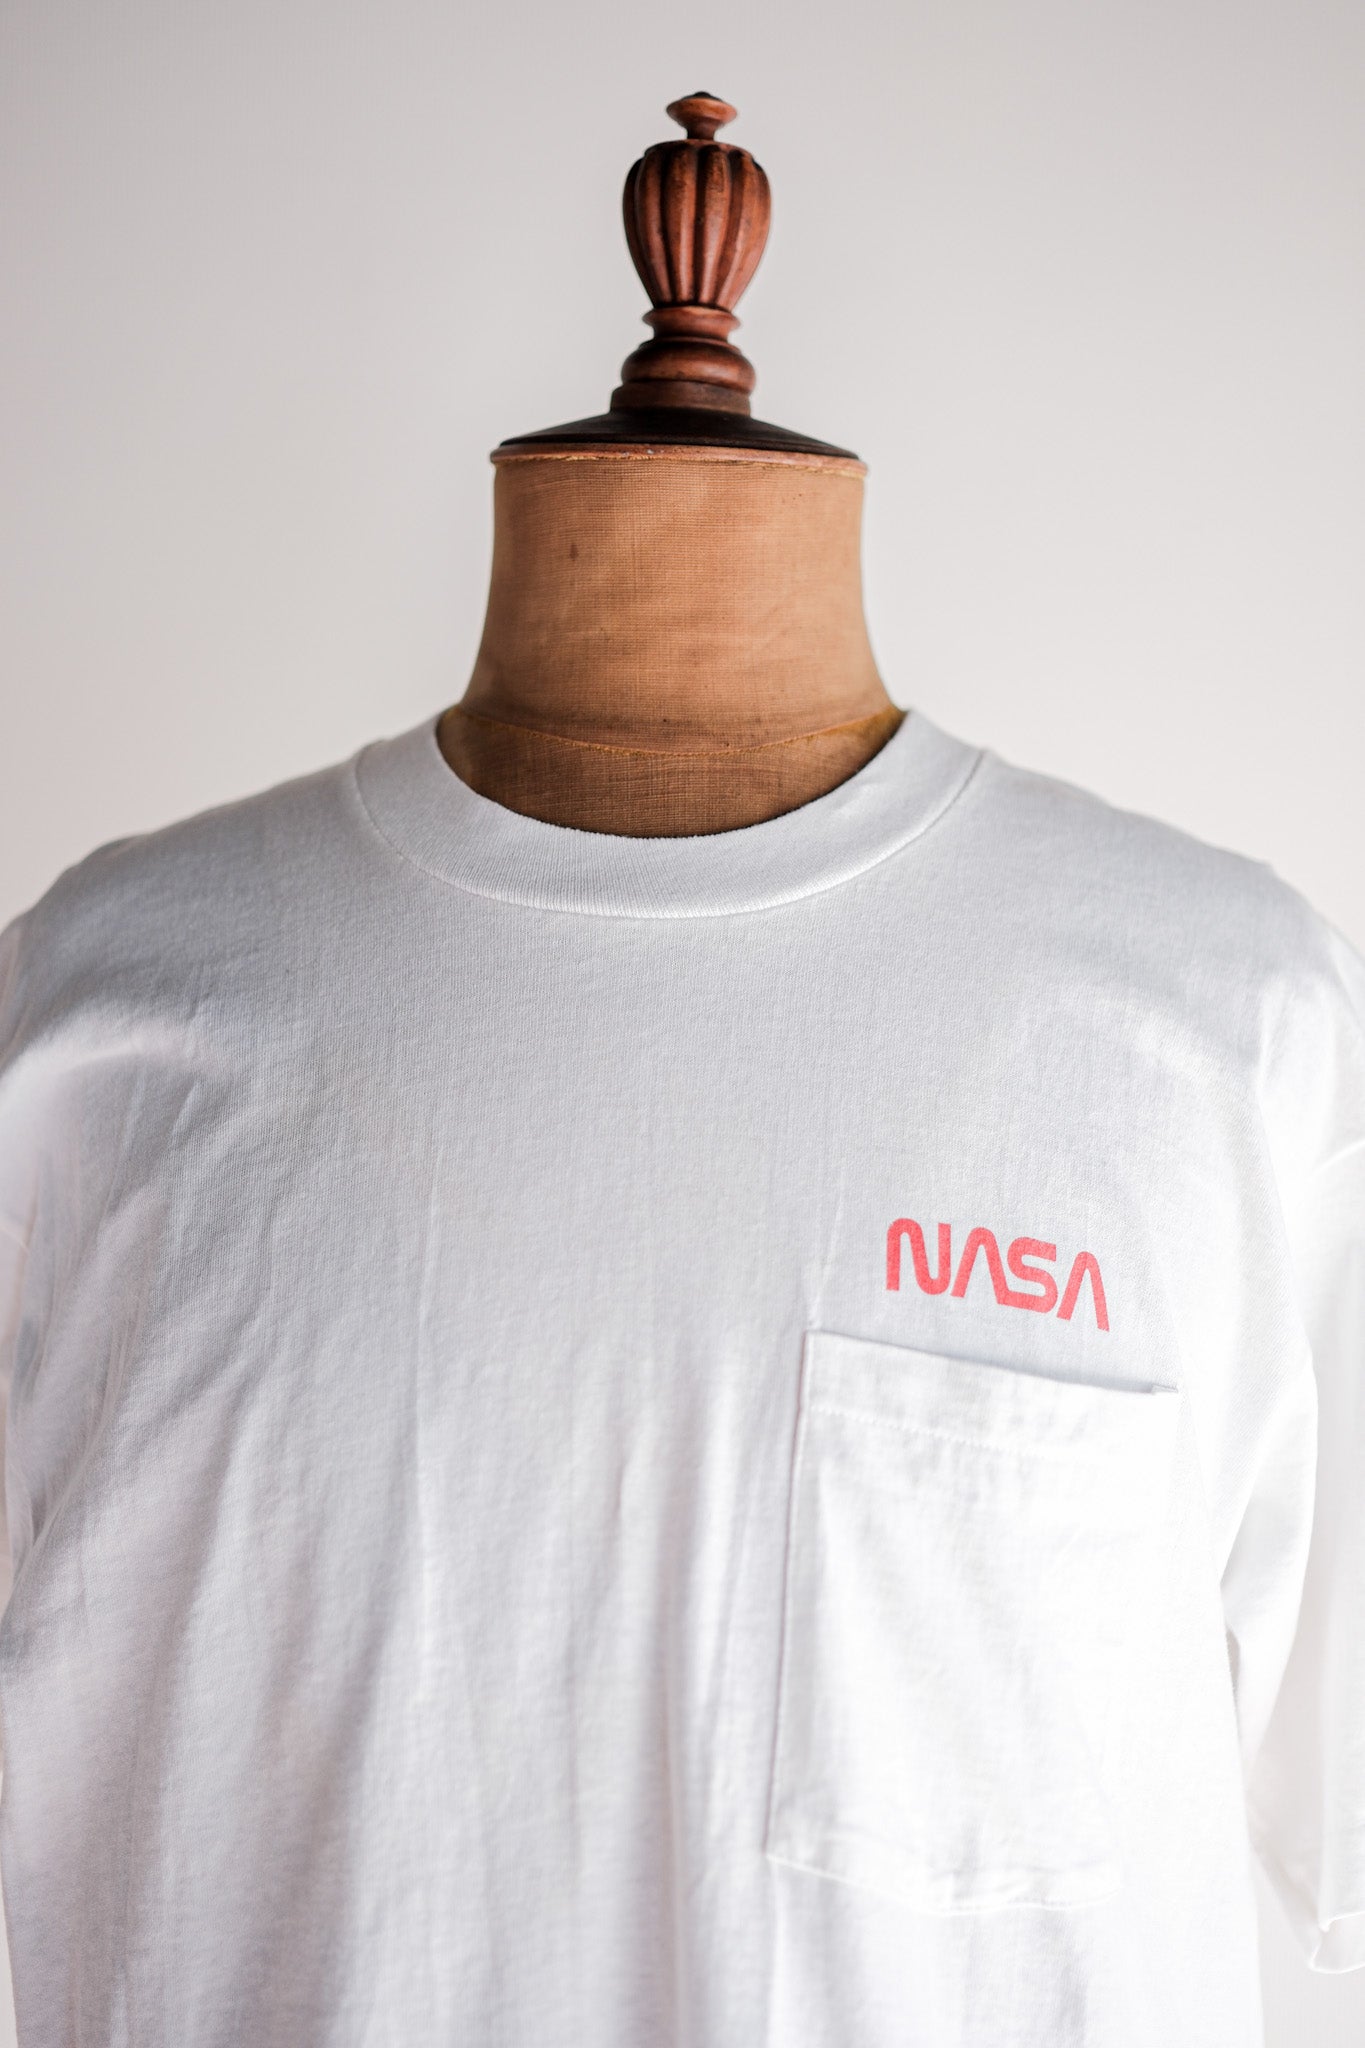 [~ 90 년대] 빈티지 연방 프린트 티셔츠 크기 .xl "NASA" "미국에서 만든"